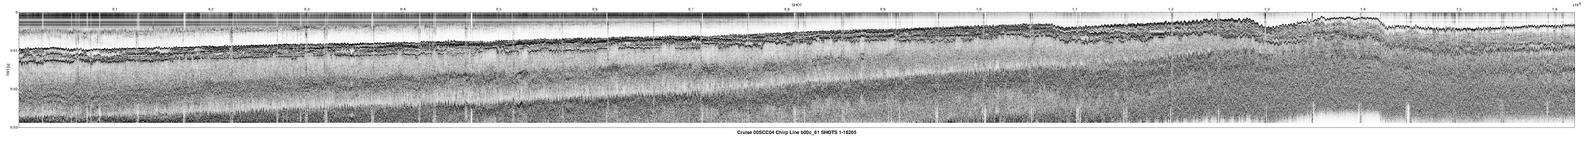 00SCC04 b00c_61 seismic profile image